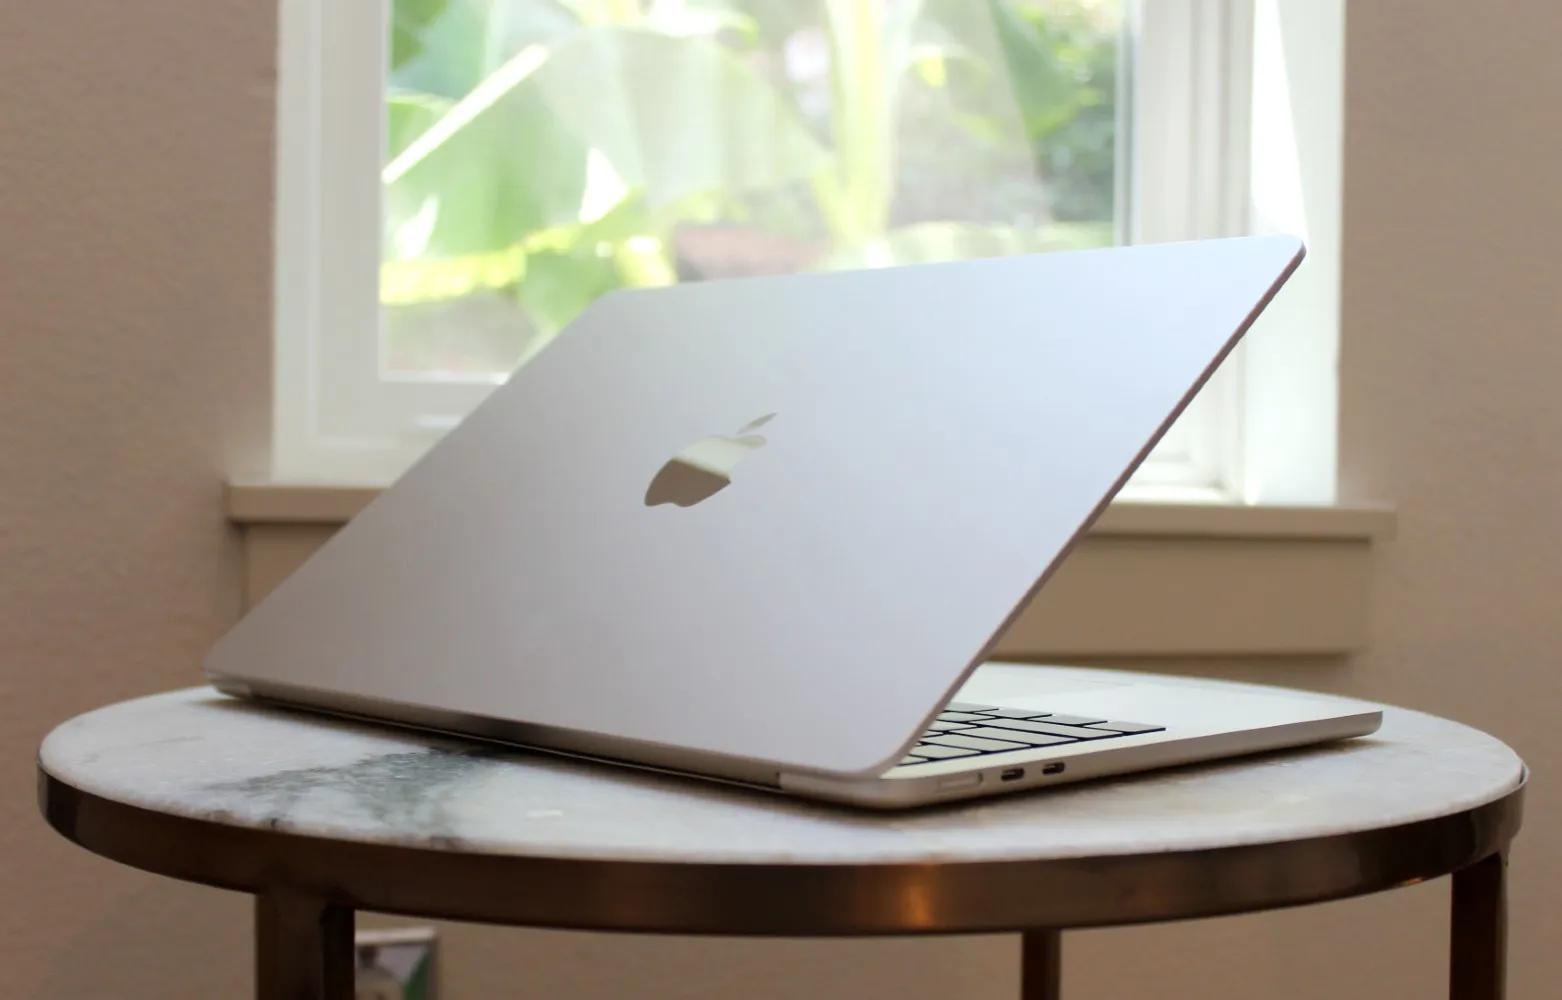 La MacBook Air sobre una mesa frente a una ventana.